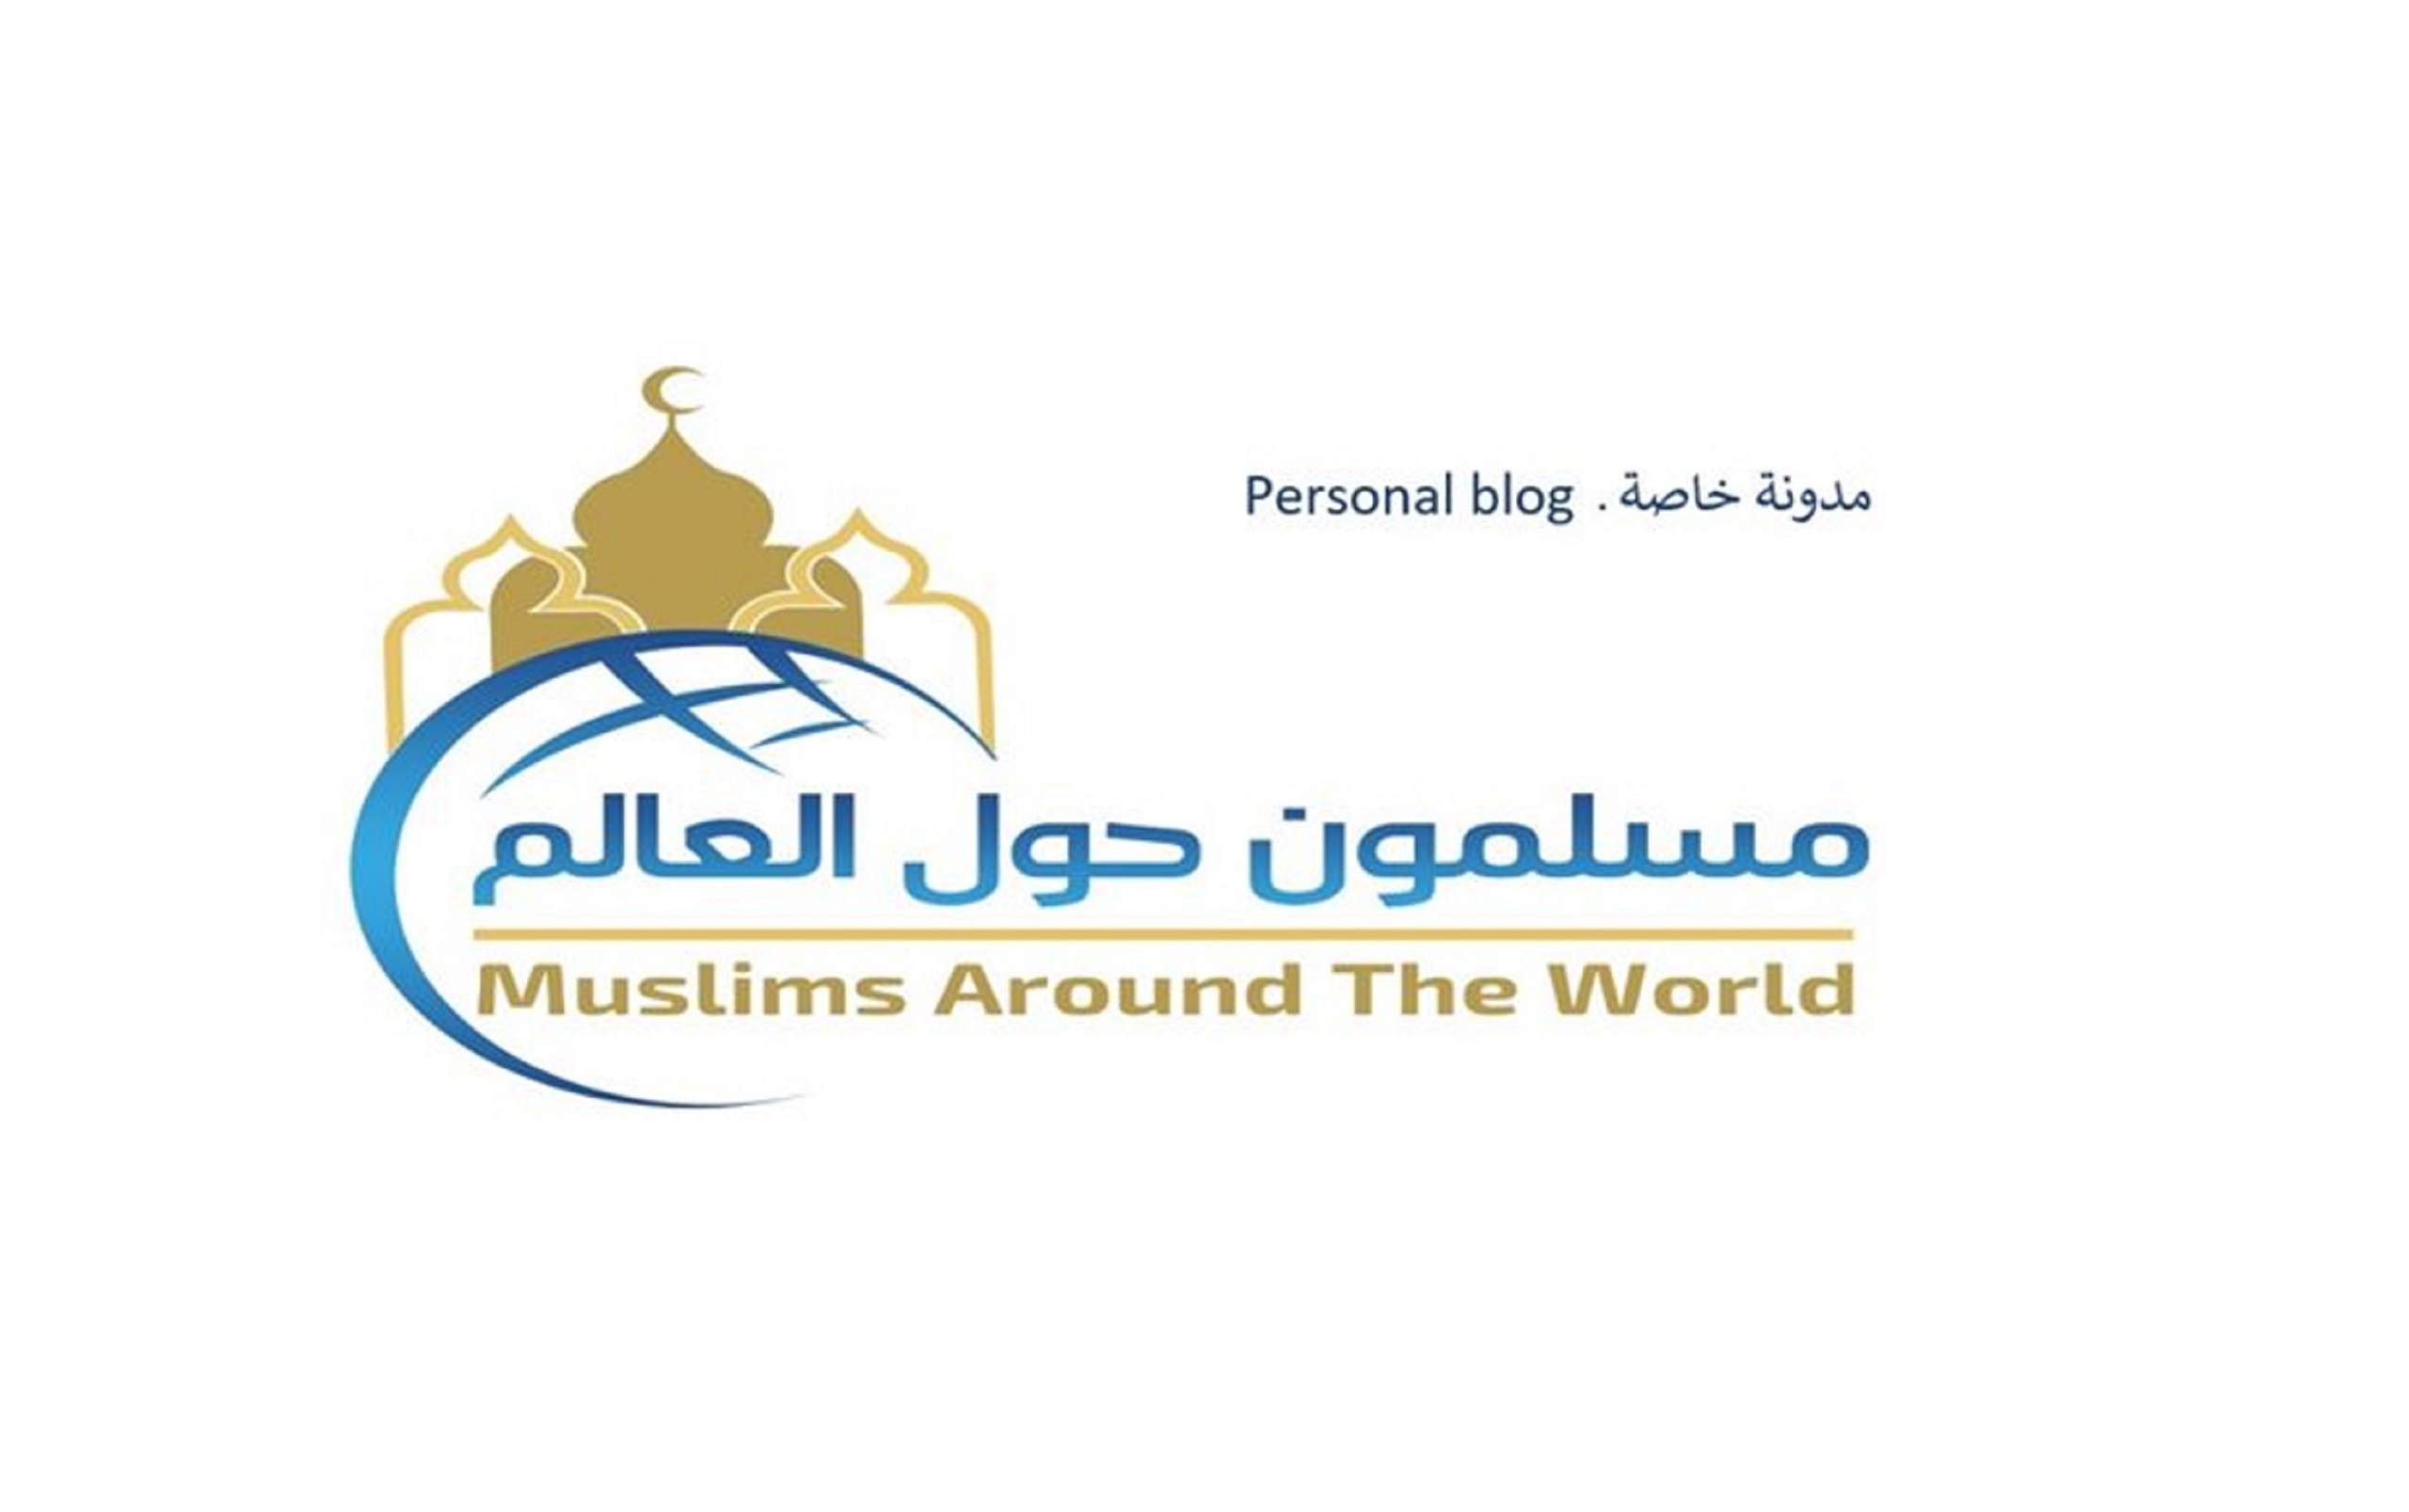 مدونة شخصية تمثل نافذة إعلامية على المجتمعات المسلمة بالدول غير الإسلامية حول العالم (الأقليات المسلمة).